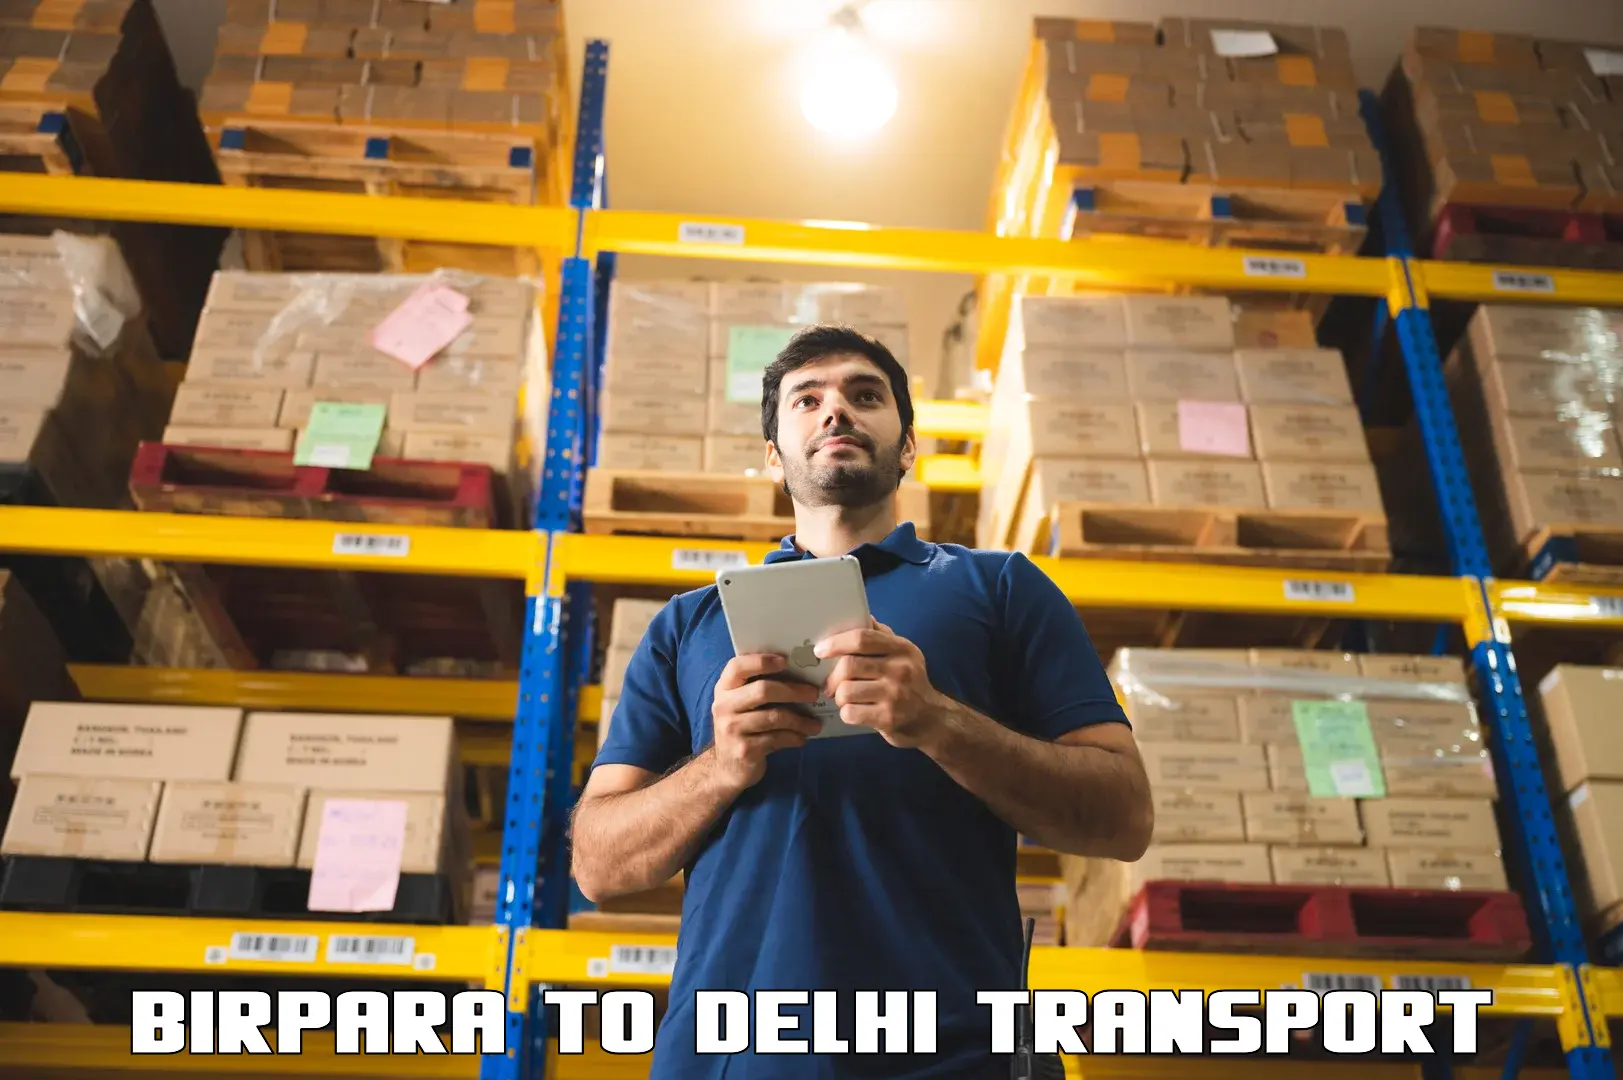 Delivery service Birpara to Delhi